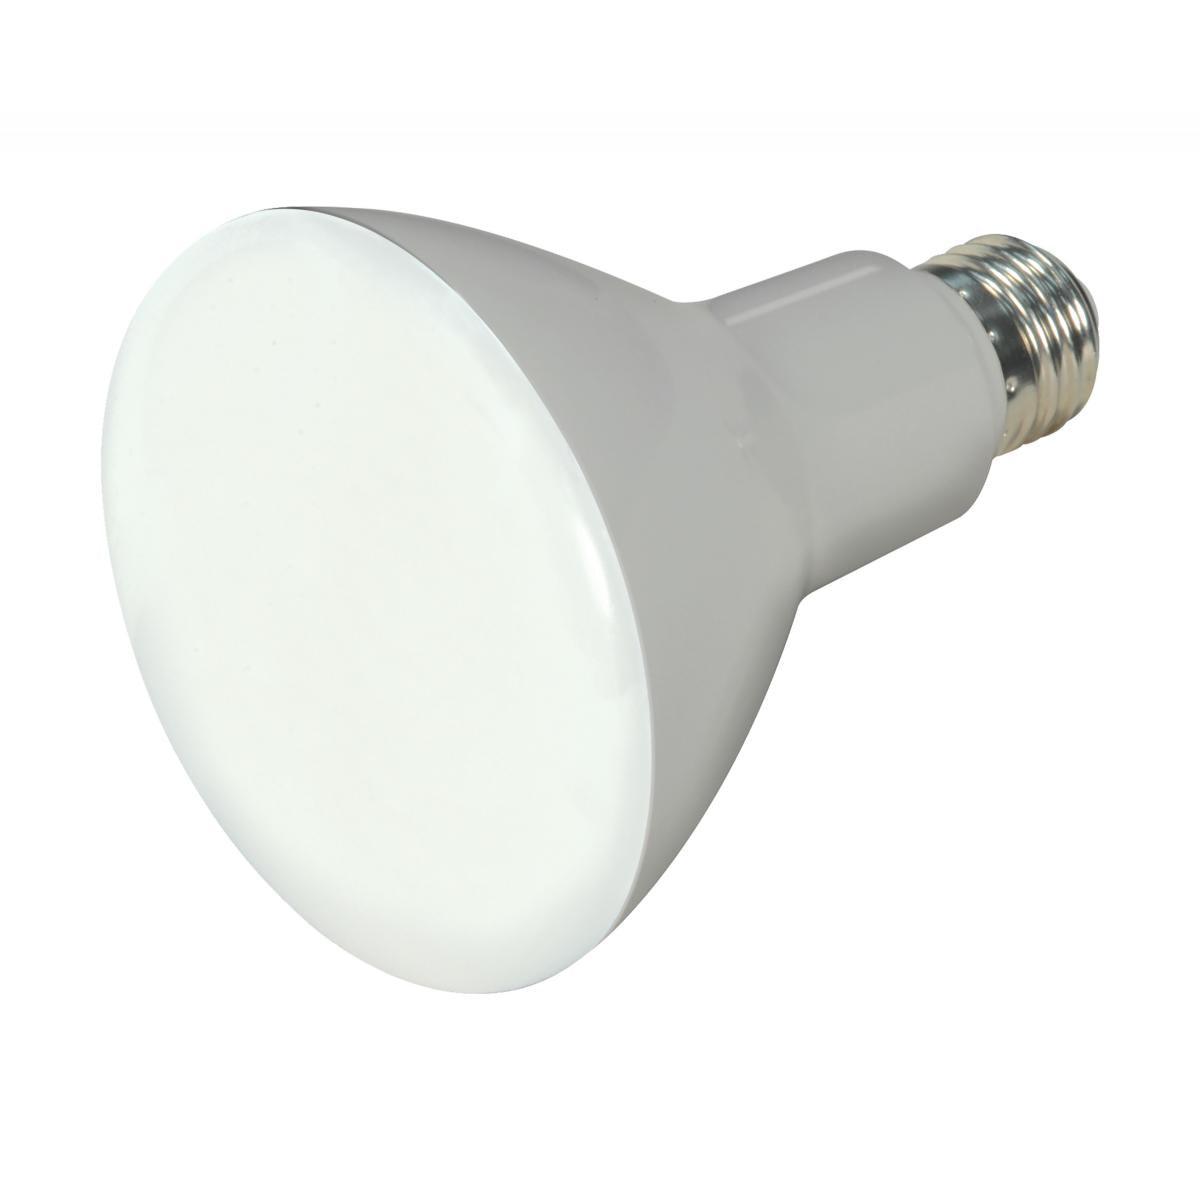 LED R30/BR30 Reflector bulb, 10 watt, 650 Lumens, 2700K, E26 Medium Base, 105 Deg. Flood, Dimmable - Bees Lighting